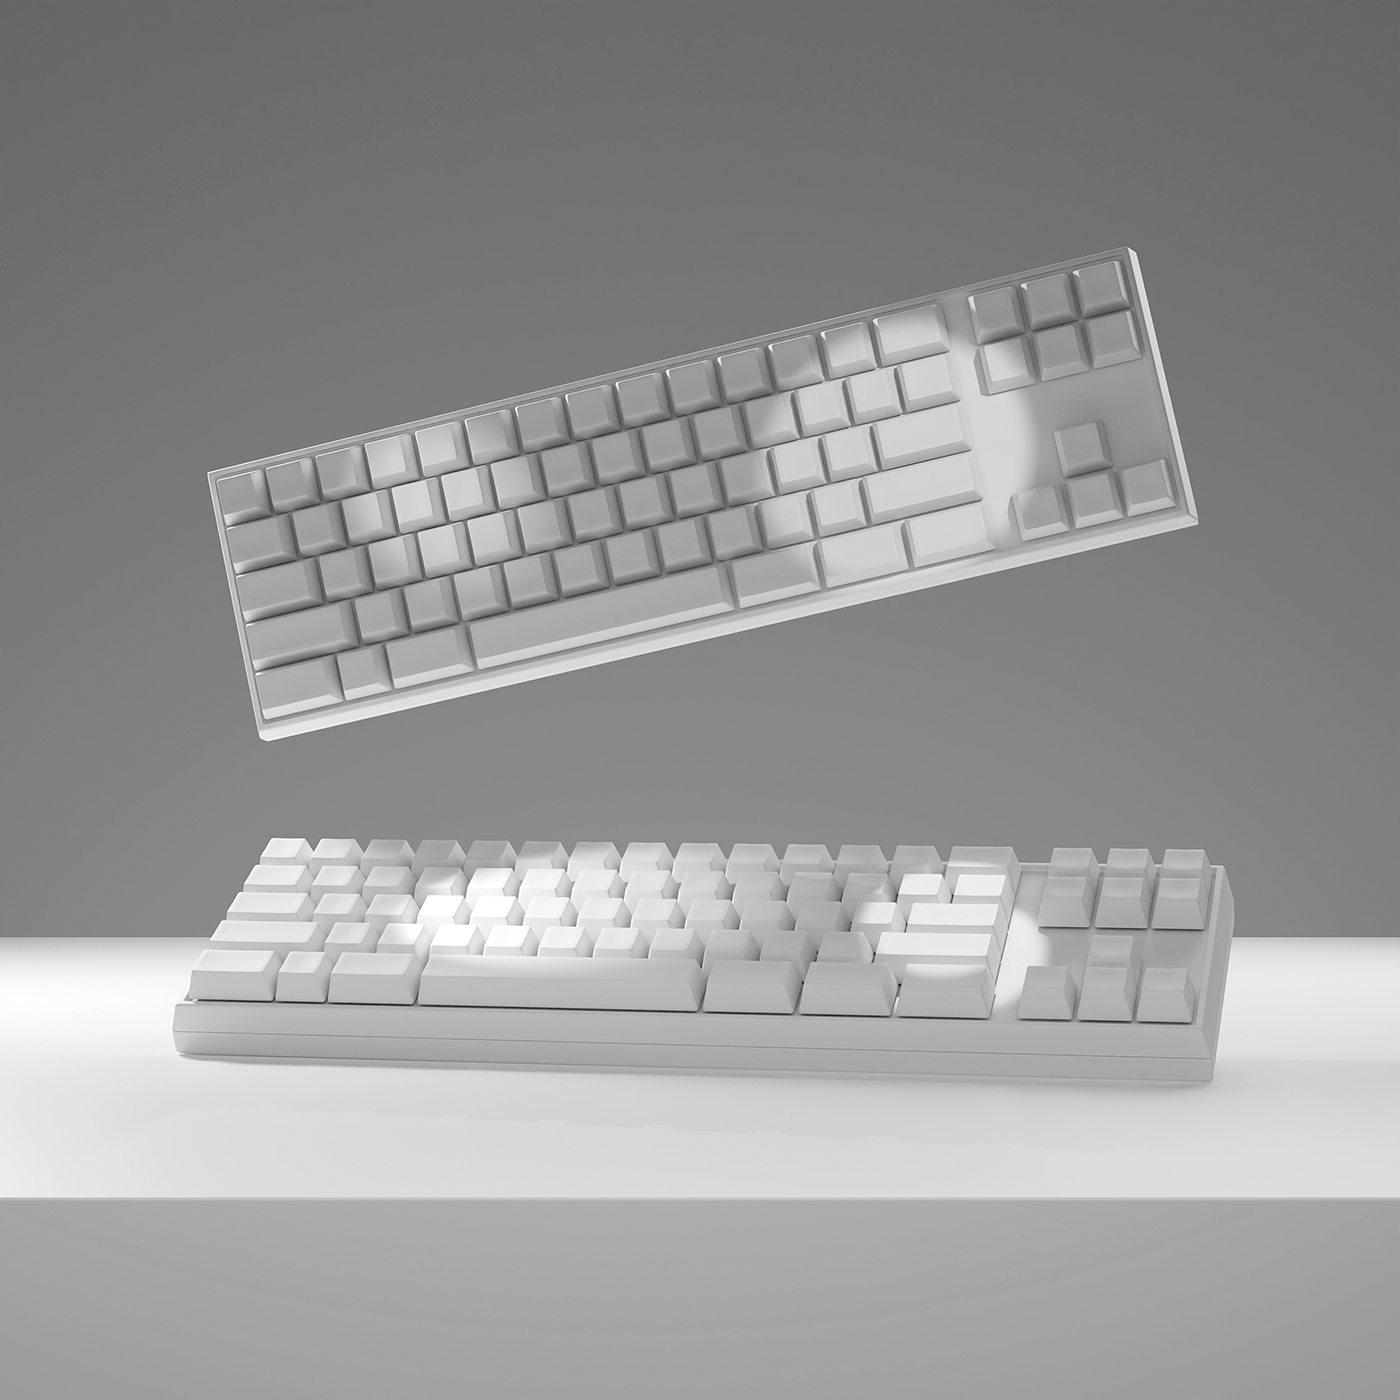 3D 3d modeling blender keyboard Packshot product product design  Render